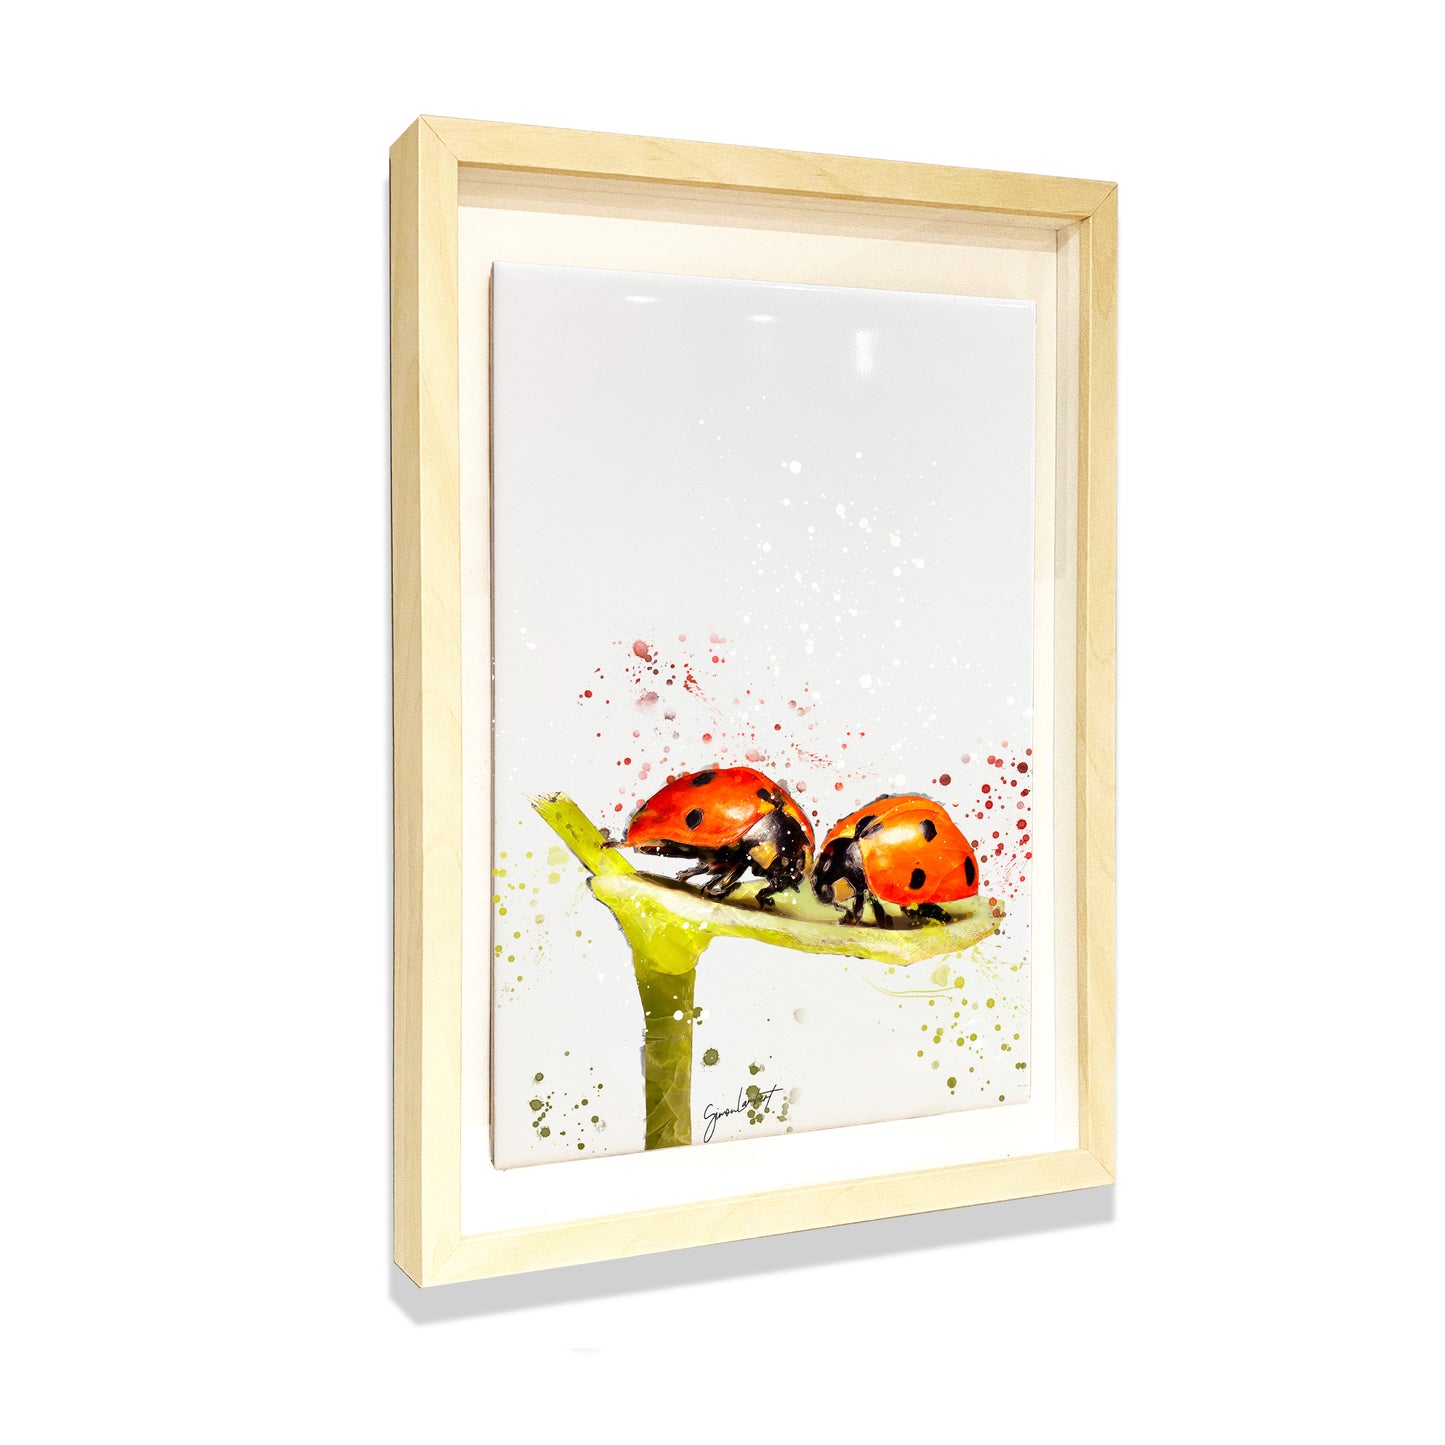 Ladybird Portrait Brush Splatter Style Artwork - Framed CERAMIC TILE Art